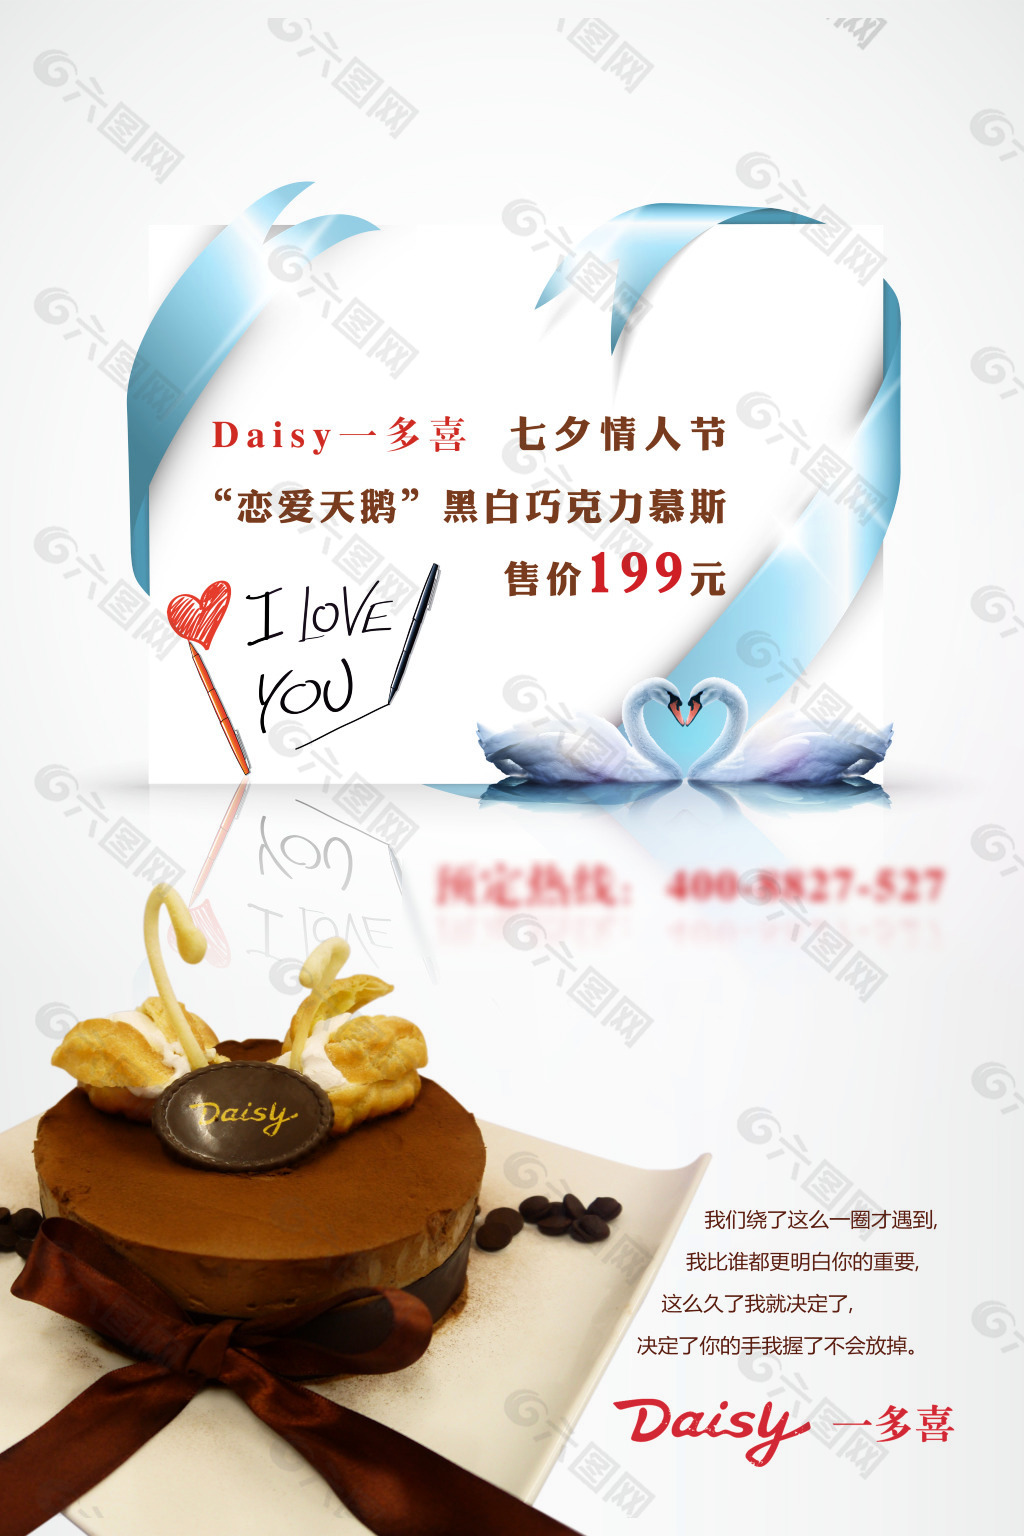 七夕情人节蛋糕店平面海报设计 蛋糕店海报平面广告素材免费下载(图片